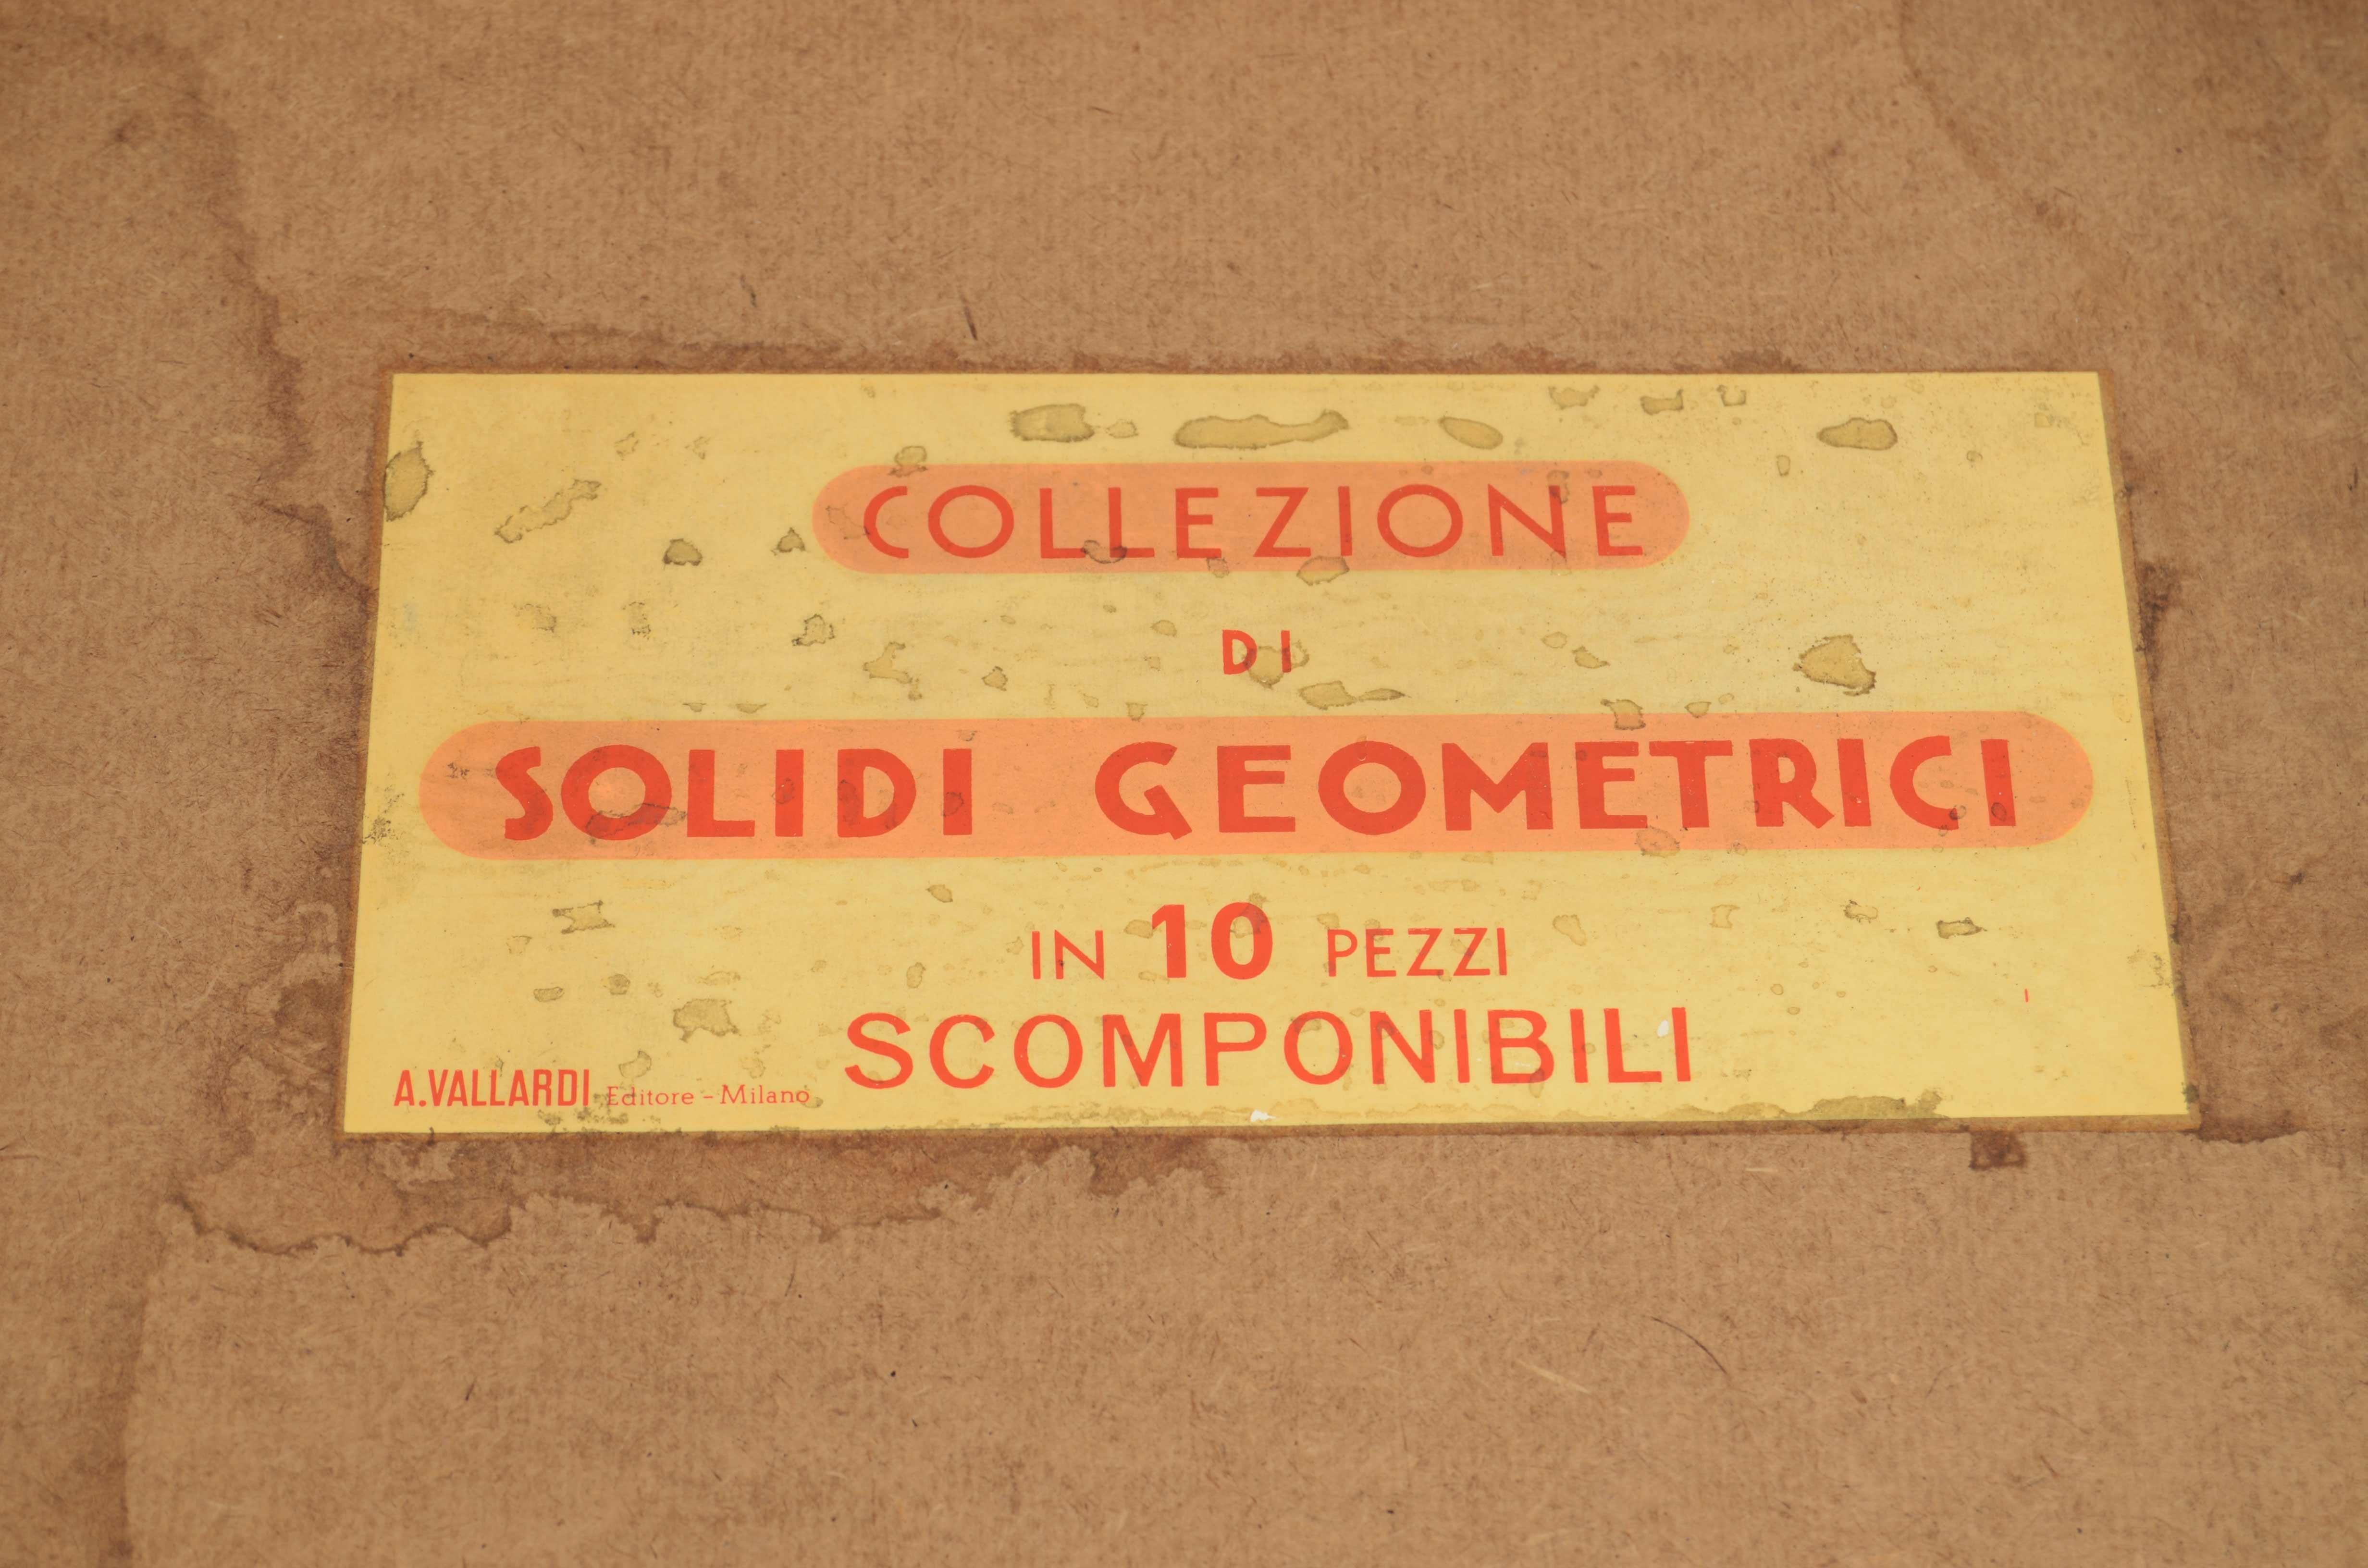 Boîte contenant 10 solides géométriques détachables en chêne, d'une hauteur maximale de 20 cm, dans leur boîte en bois d'origine. Produit à des fins éducatives pour les écoles par l'éditeur Antonio Vallardi dans les années 1960. Jamais